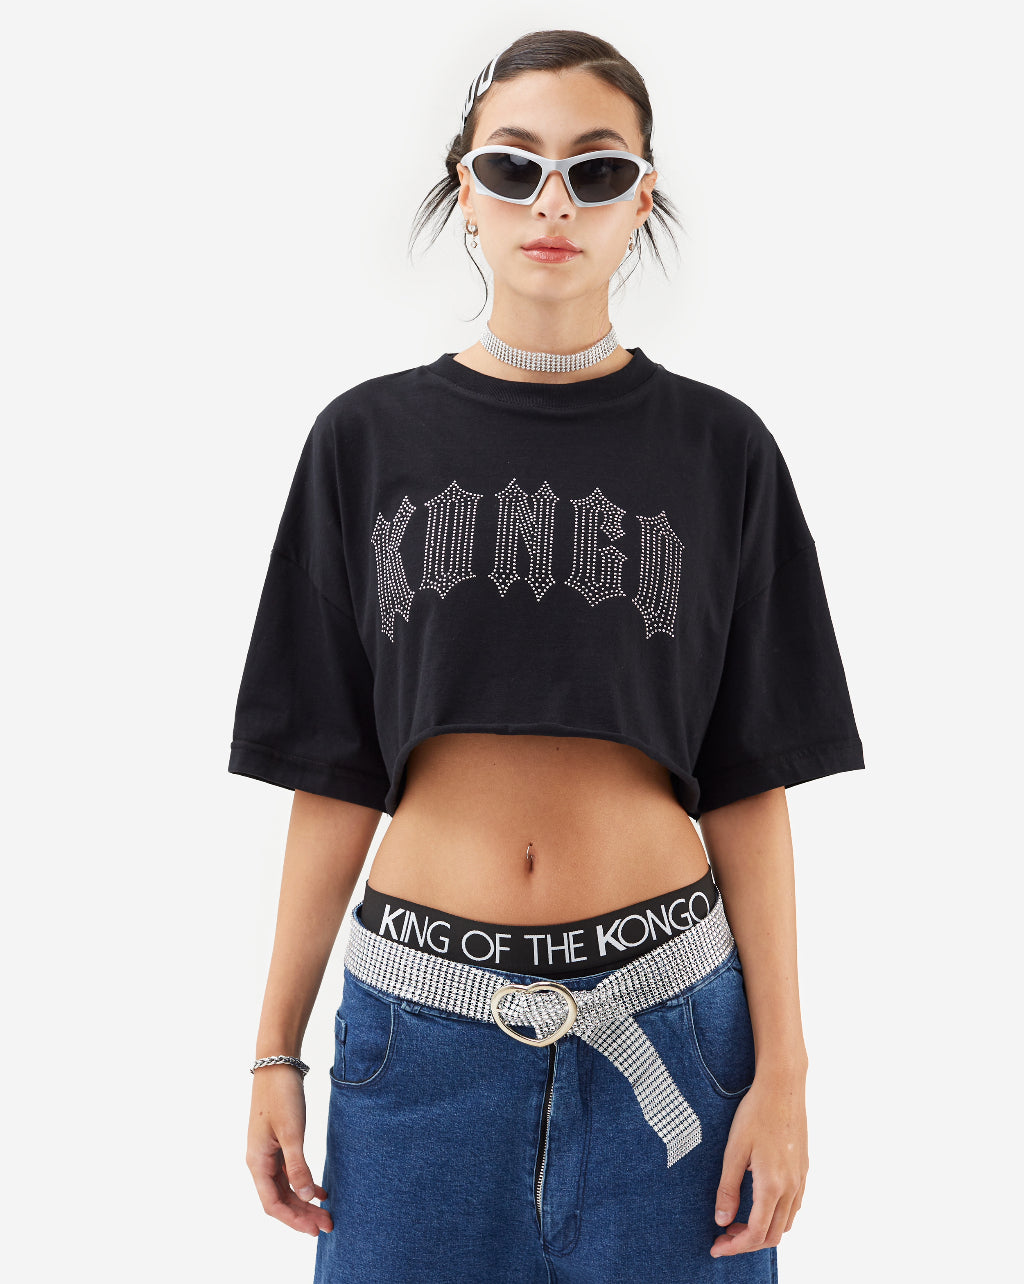 100% Cotton Round Neck Oversized Kongo Goth Crop Top T-Shirt- Gender Neutral